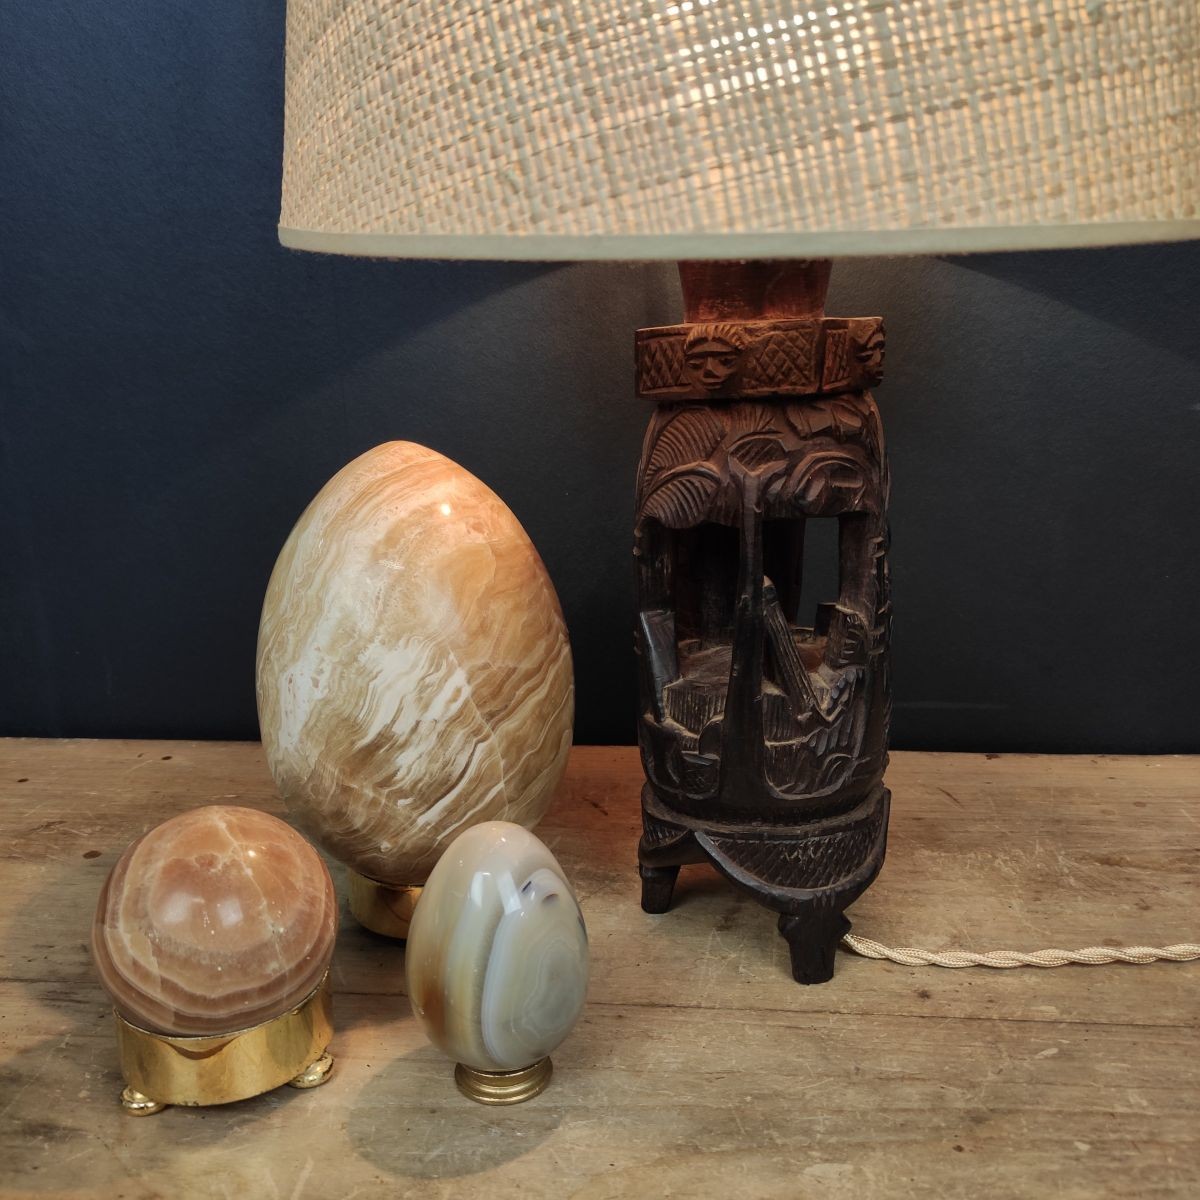 Lampe Vintage Scandinave en bois - Le palais des bricoles